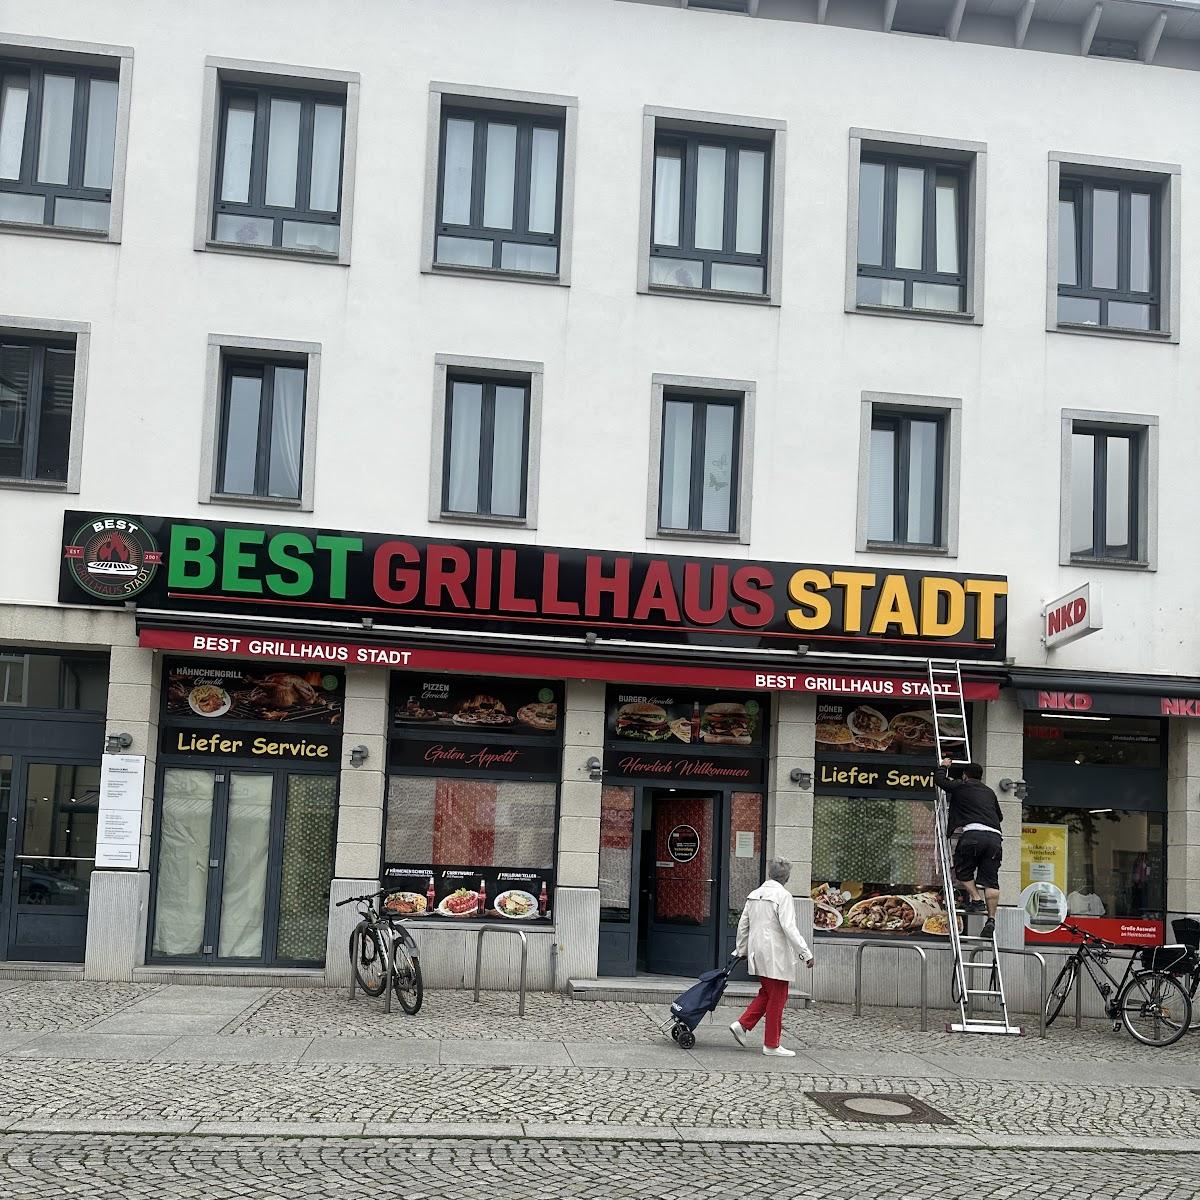 Restaurant "Best Grillhaus Stadt" in Strausberg